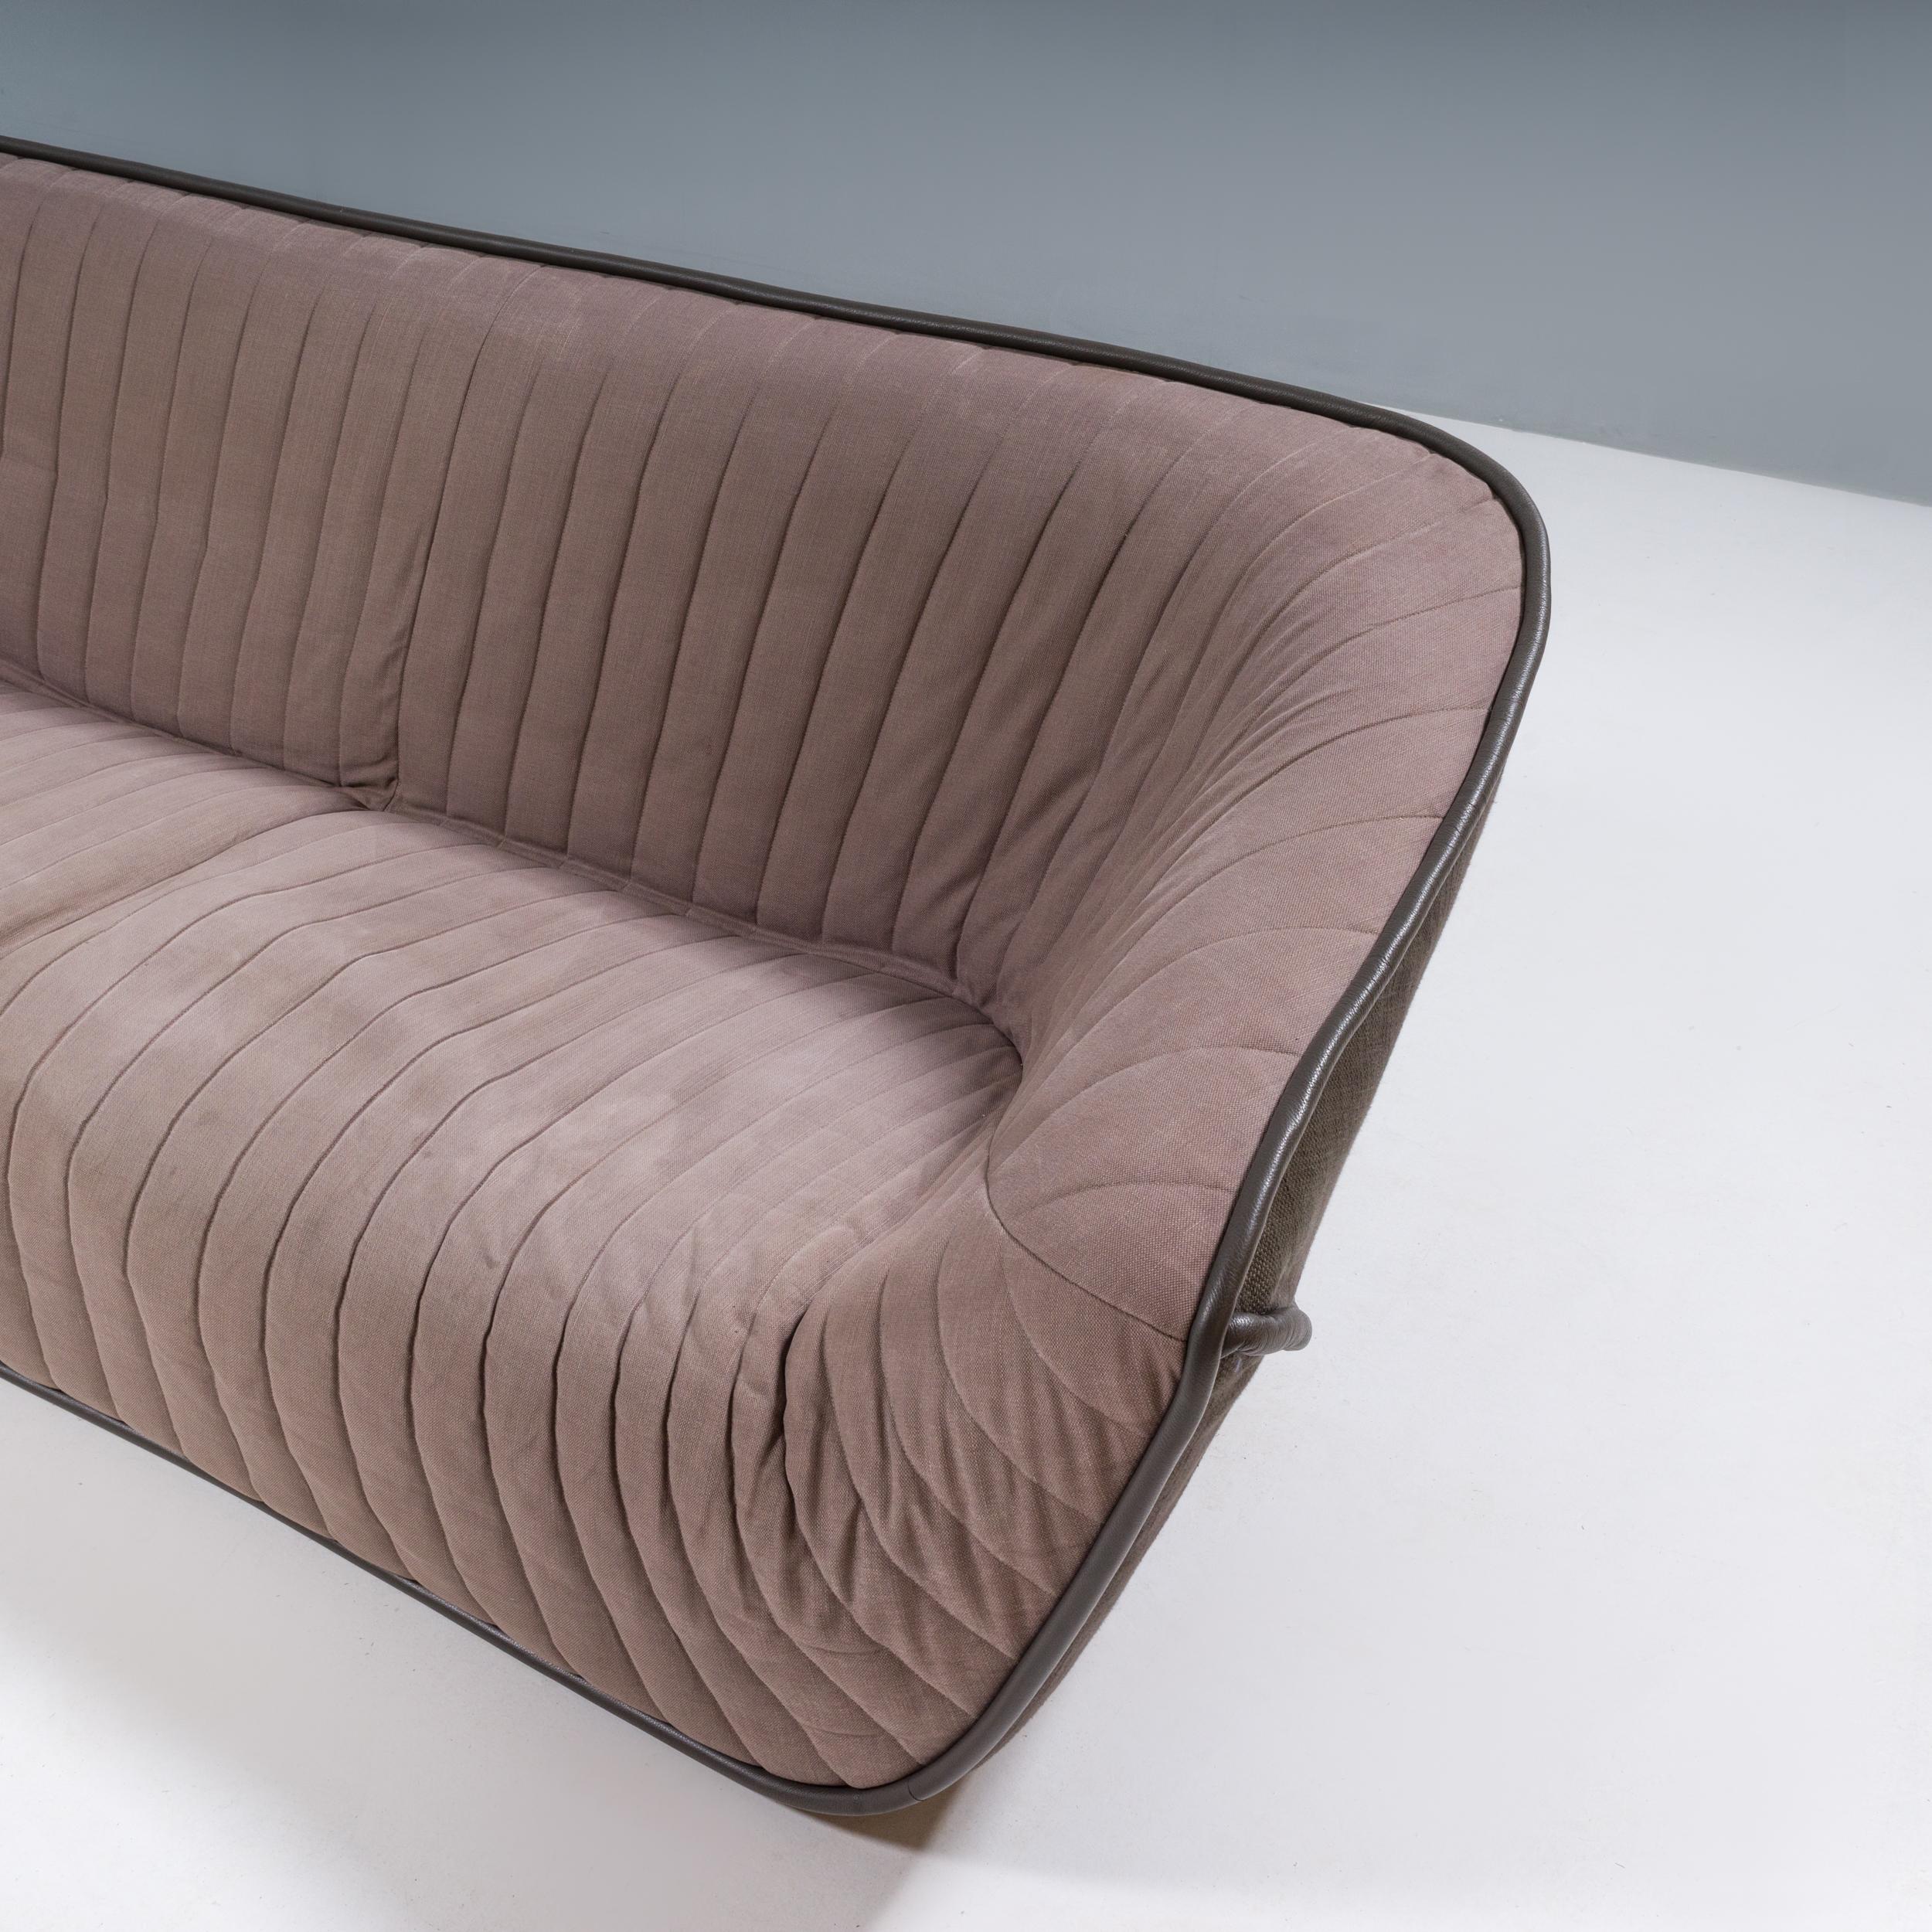 Das ursprünglich von Cédric Ragot für Roche Bobois im Jahr 2013 entworfene Sofa Nautil verleiht den ikonischen Stilen der 1970er Jahre ein modernes Update.

Das aus einem Massivholzrahmen gefertigte Sofa ist mit Schaumstoff gepolstert, was eine